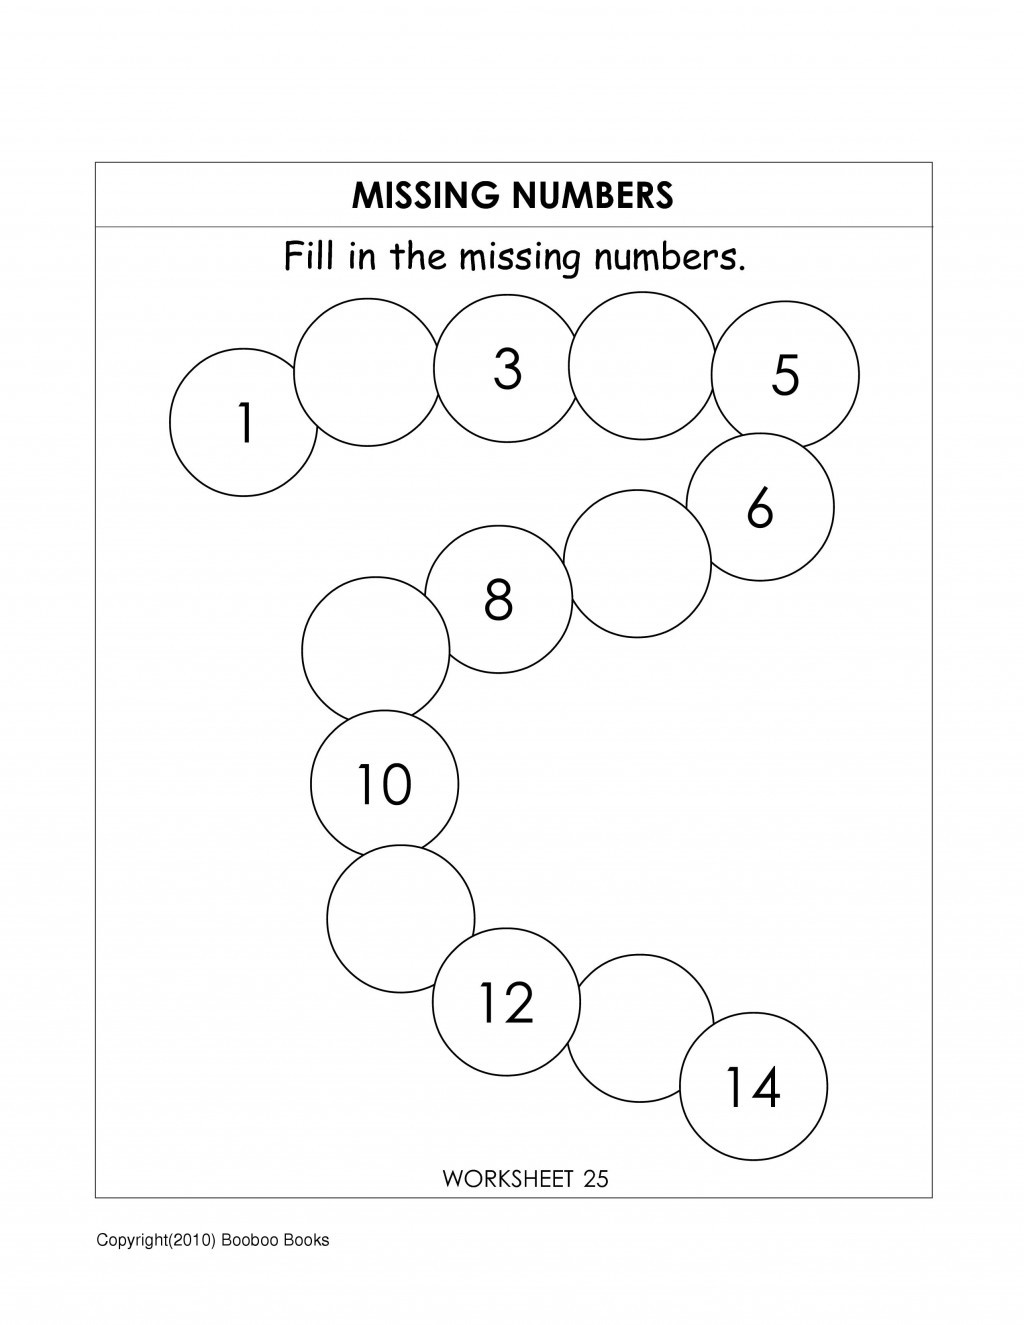 Missing Number Worksheets Kindergarten Missing Number Worksheets for Kindergarten